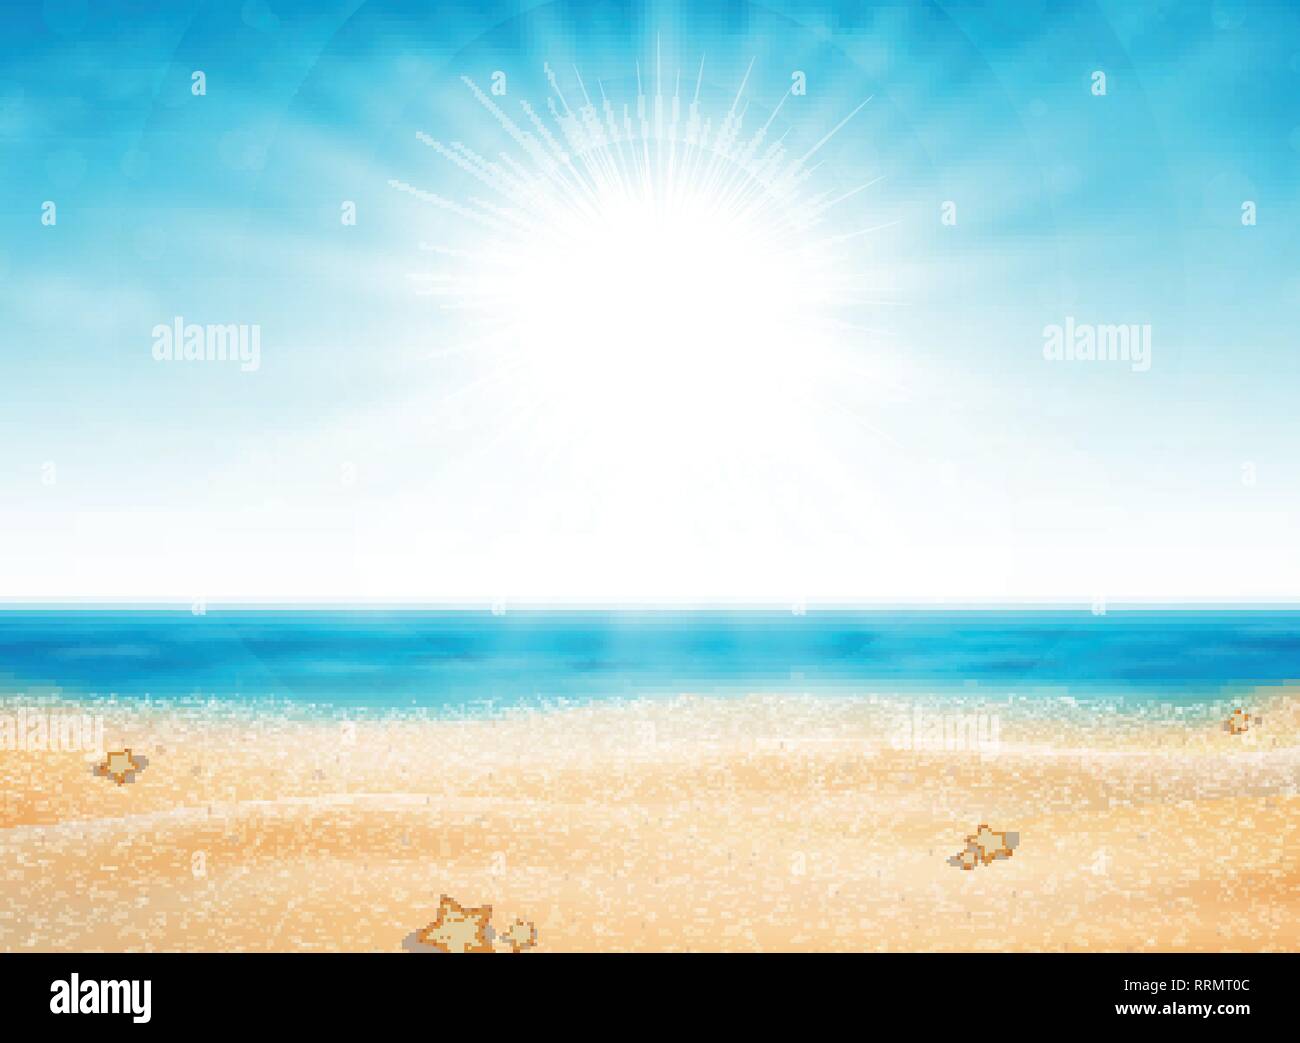 Estate spiaggia vista di sun burst con cielo blu sullo sfondo. La decorazione per viaggiare nel tempo della natura. È possibile utilizzare per inserzione, poster, stampare illustrazioni. illustra Illustrazione Vettoriale